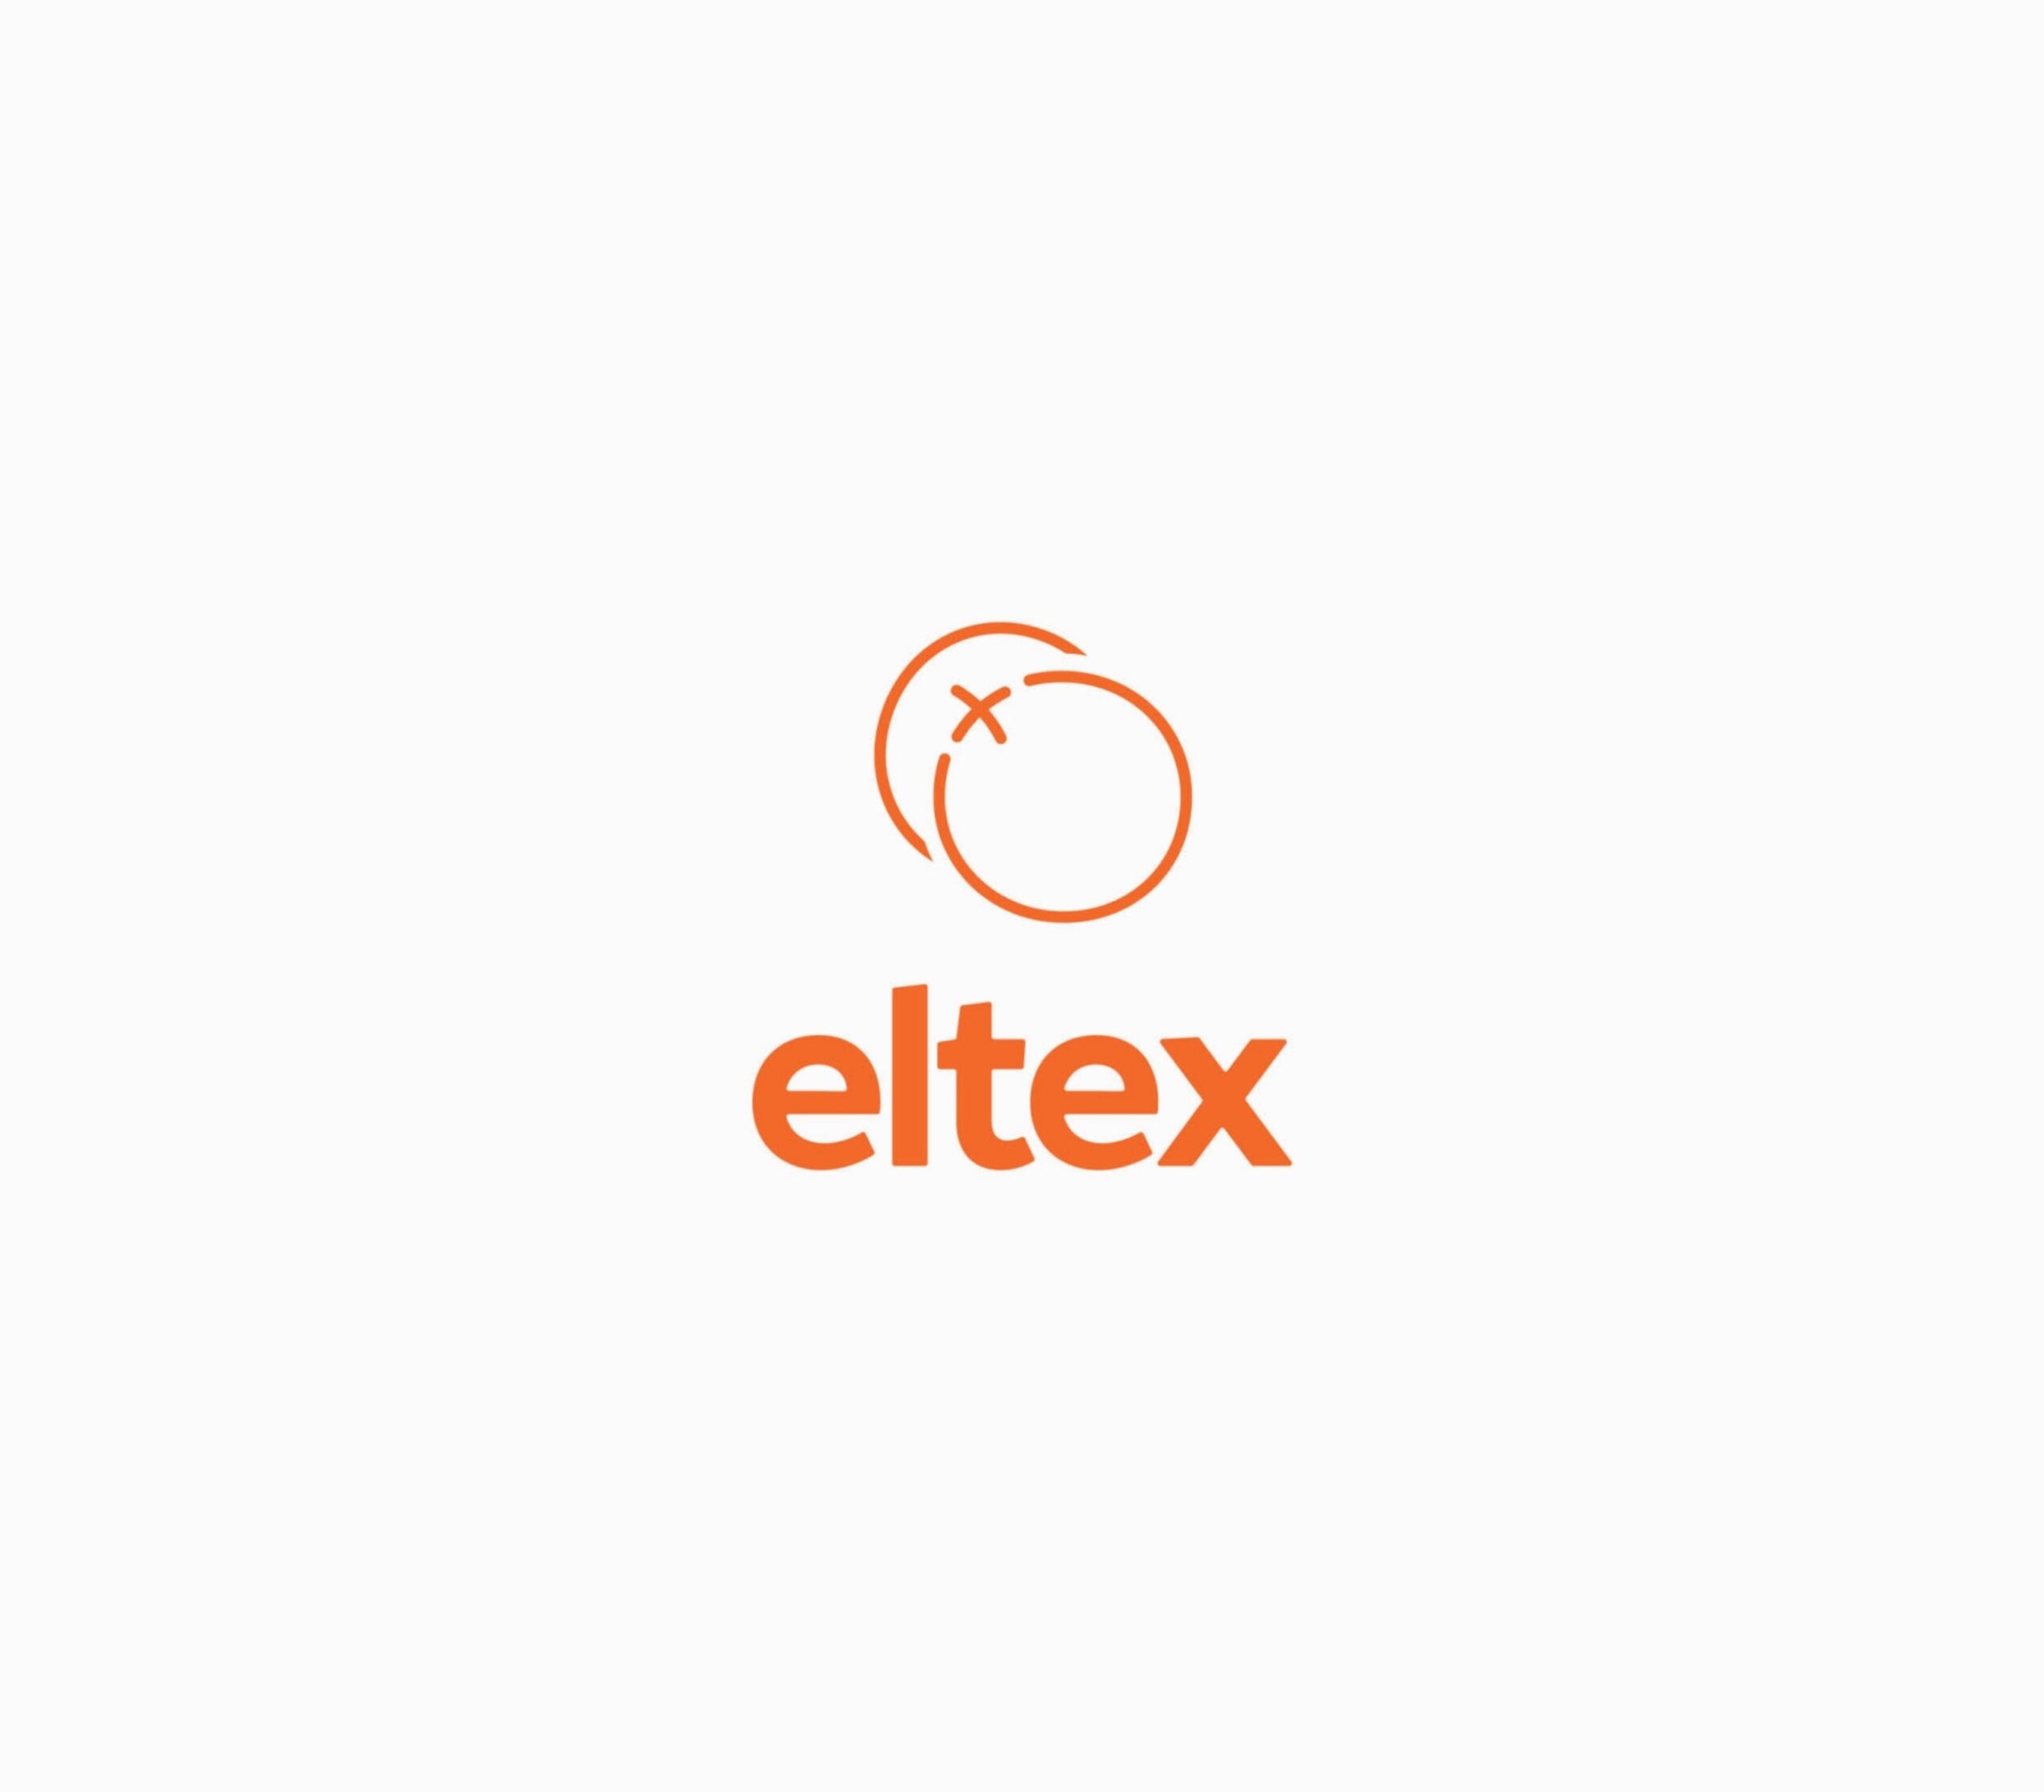 ELTEX Concept WEB 01 02 1804x0